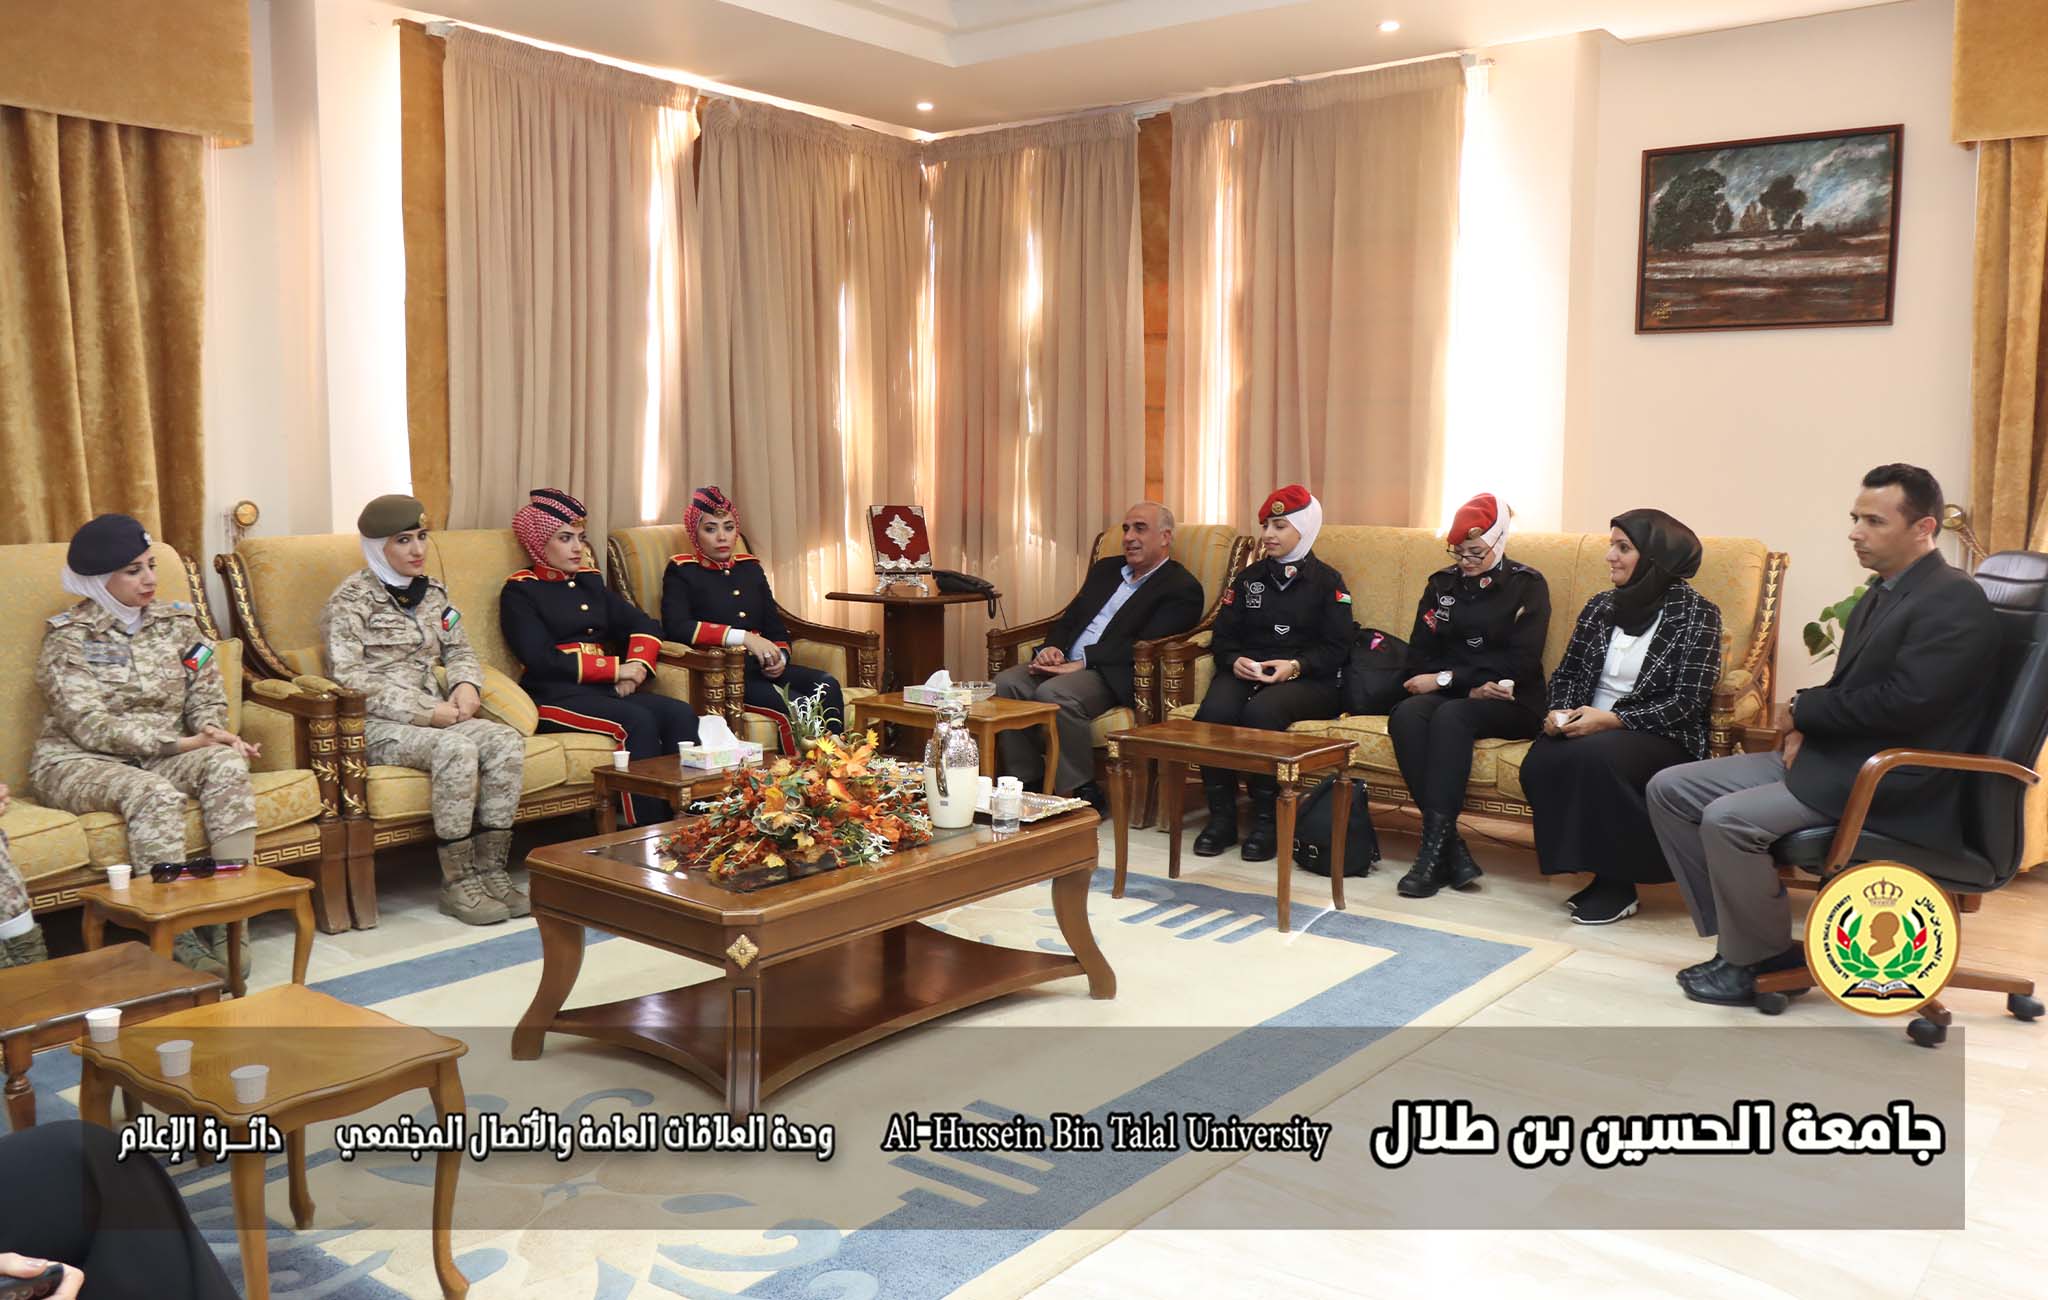 فعالية في الجامعة للحديث عن دور المرأة في القوات المسلحة الأردنية